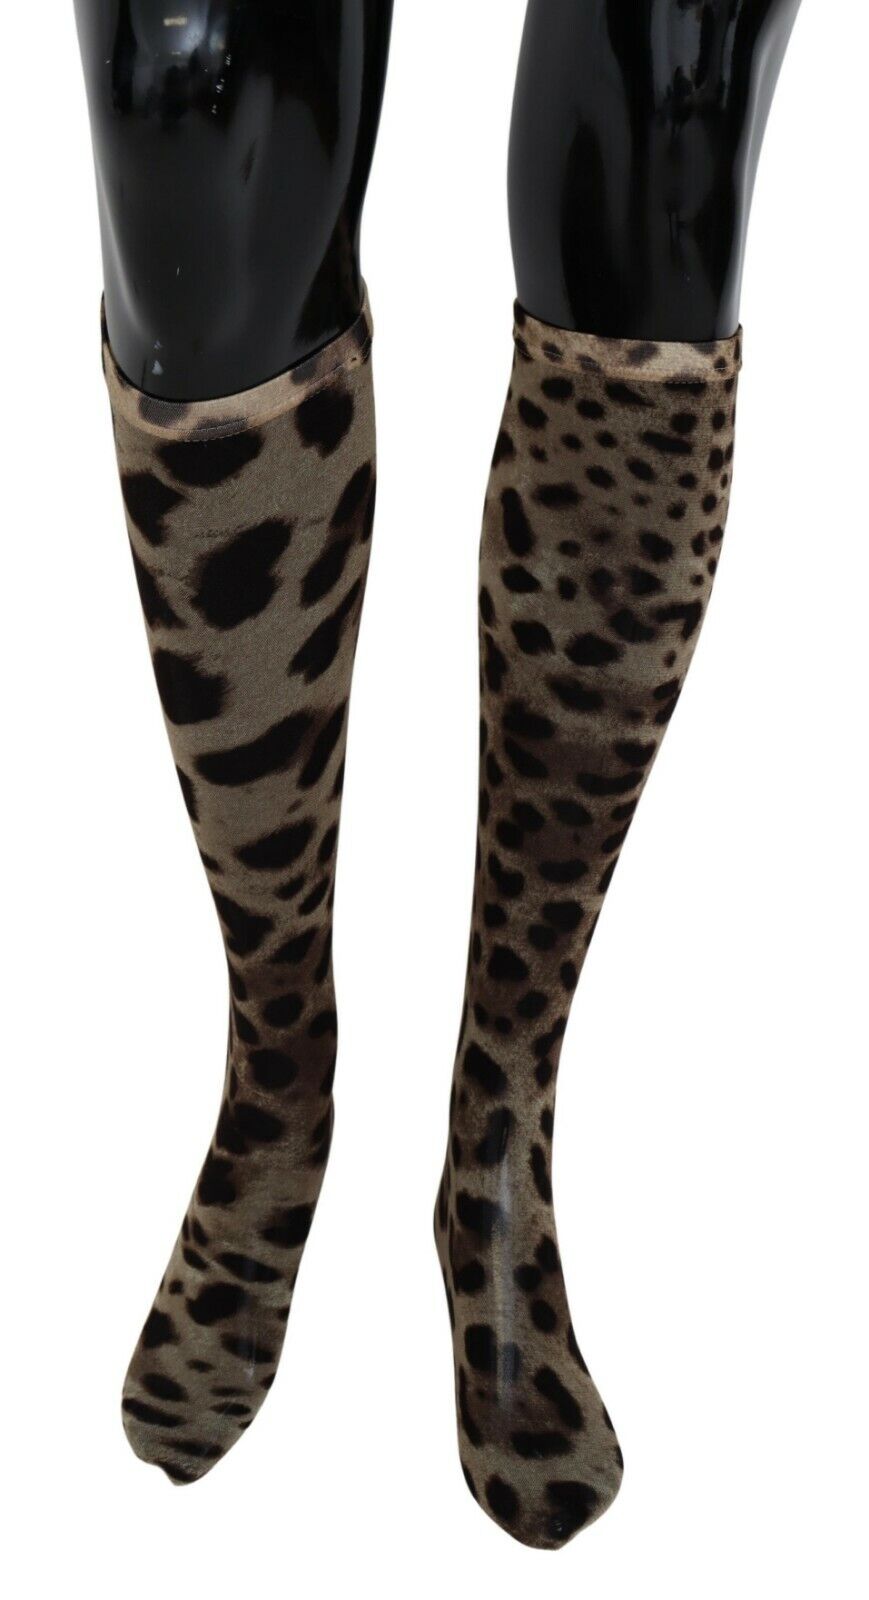 DOLCE & GABBANA Носки нейлоновые коричневые с леопардовым принтом женские до колена s. Рекомендованная розничная цена: 220 долларов США.